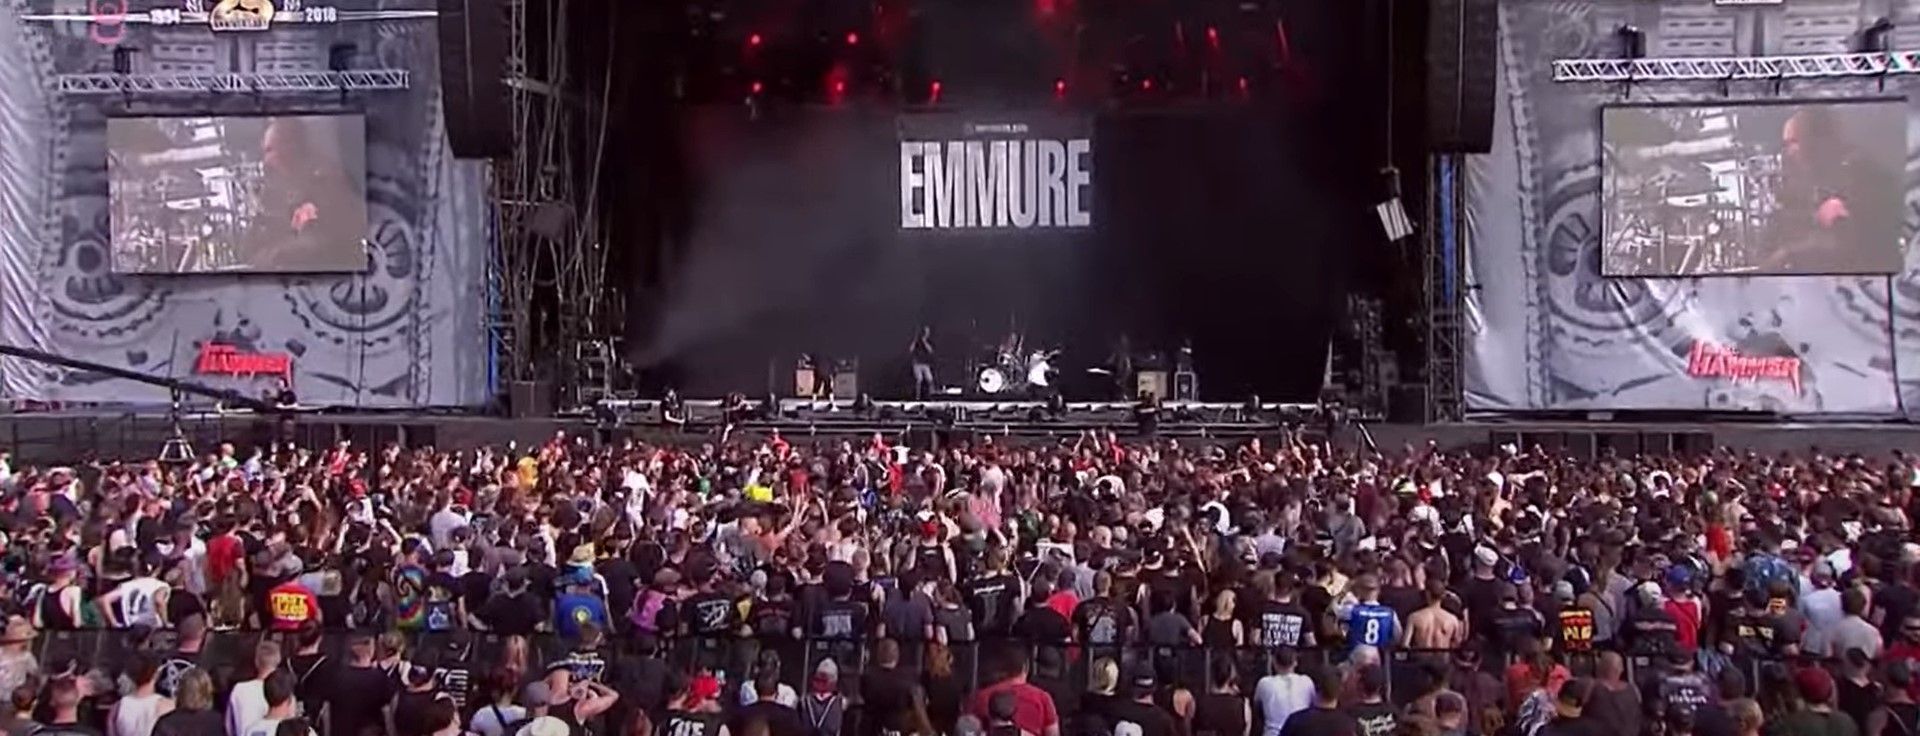 Emmure - Live At Full Force Festival 2018 (Full)